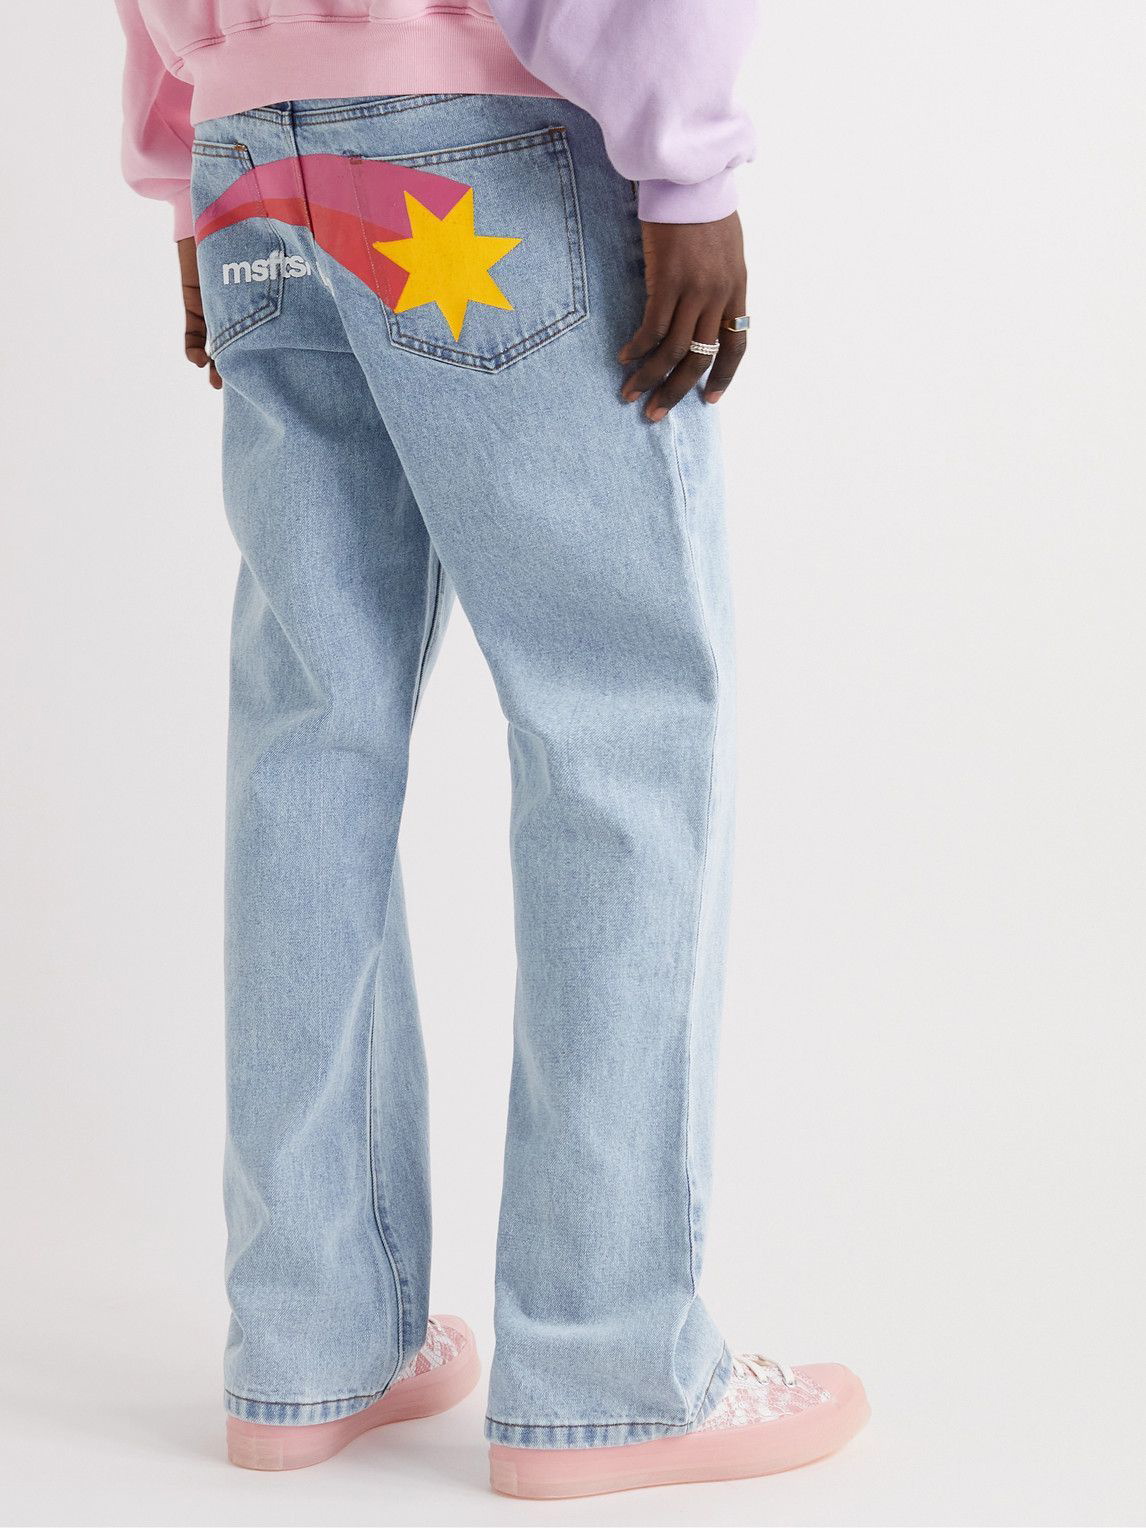 Bopæl vant skive MSFTSrep - Straight-Leg Printed Jeans - Blue MSFTSrep